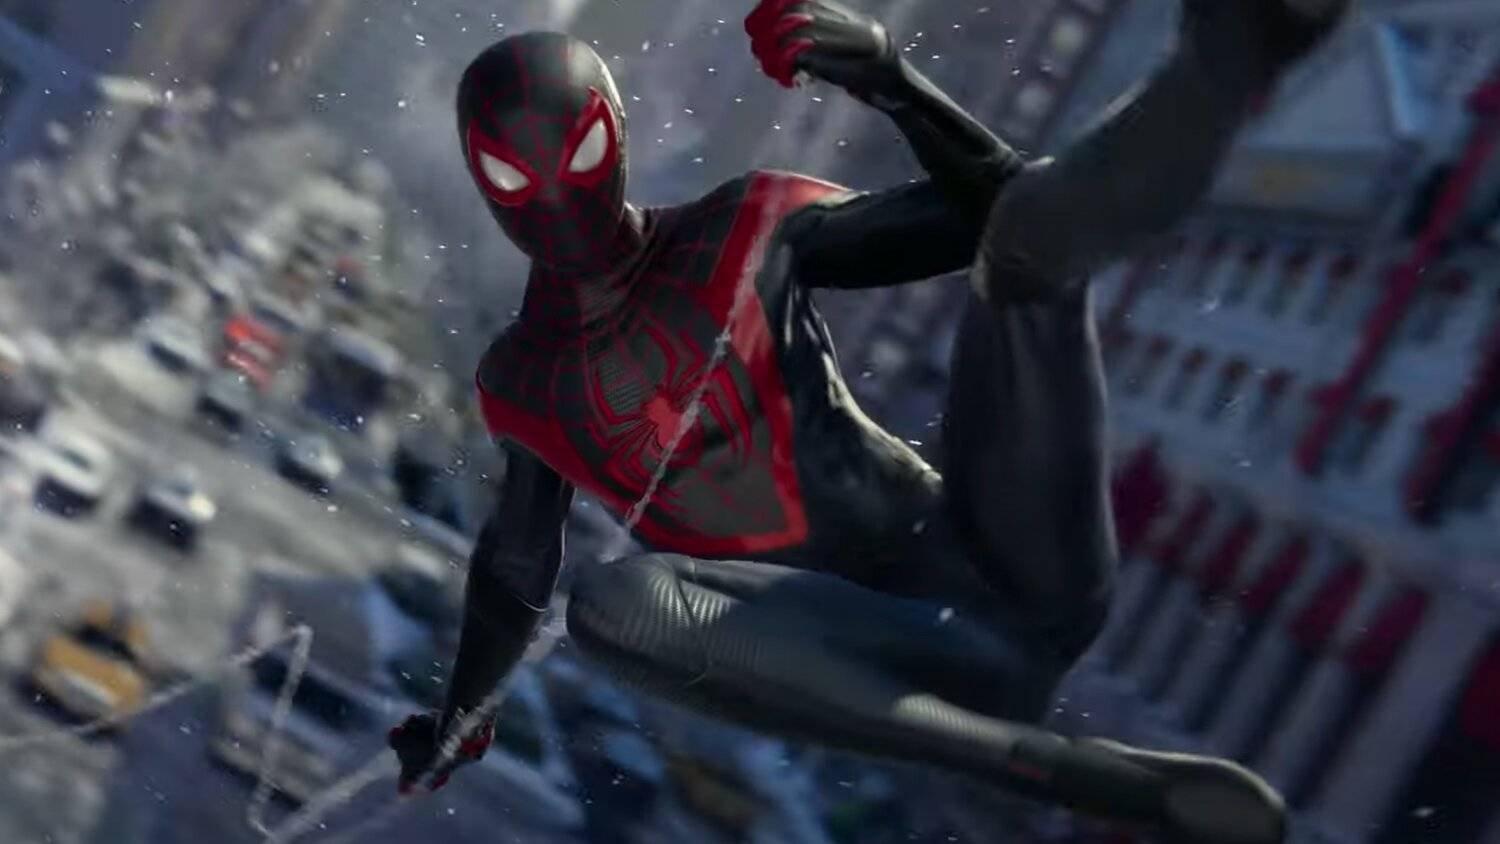 Immagine di Spider-Man Miles Morales non ha rivali, è il più visto su YouTube